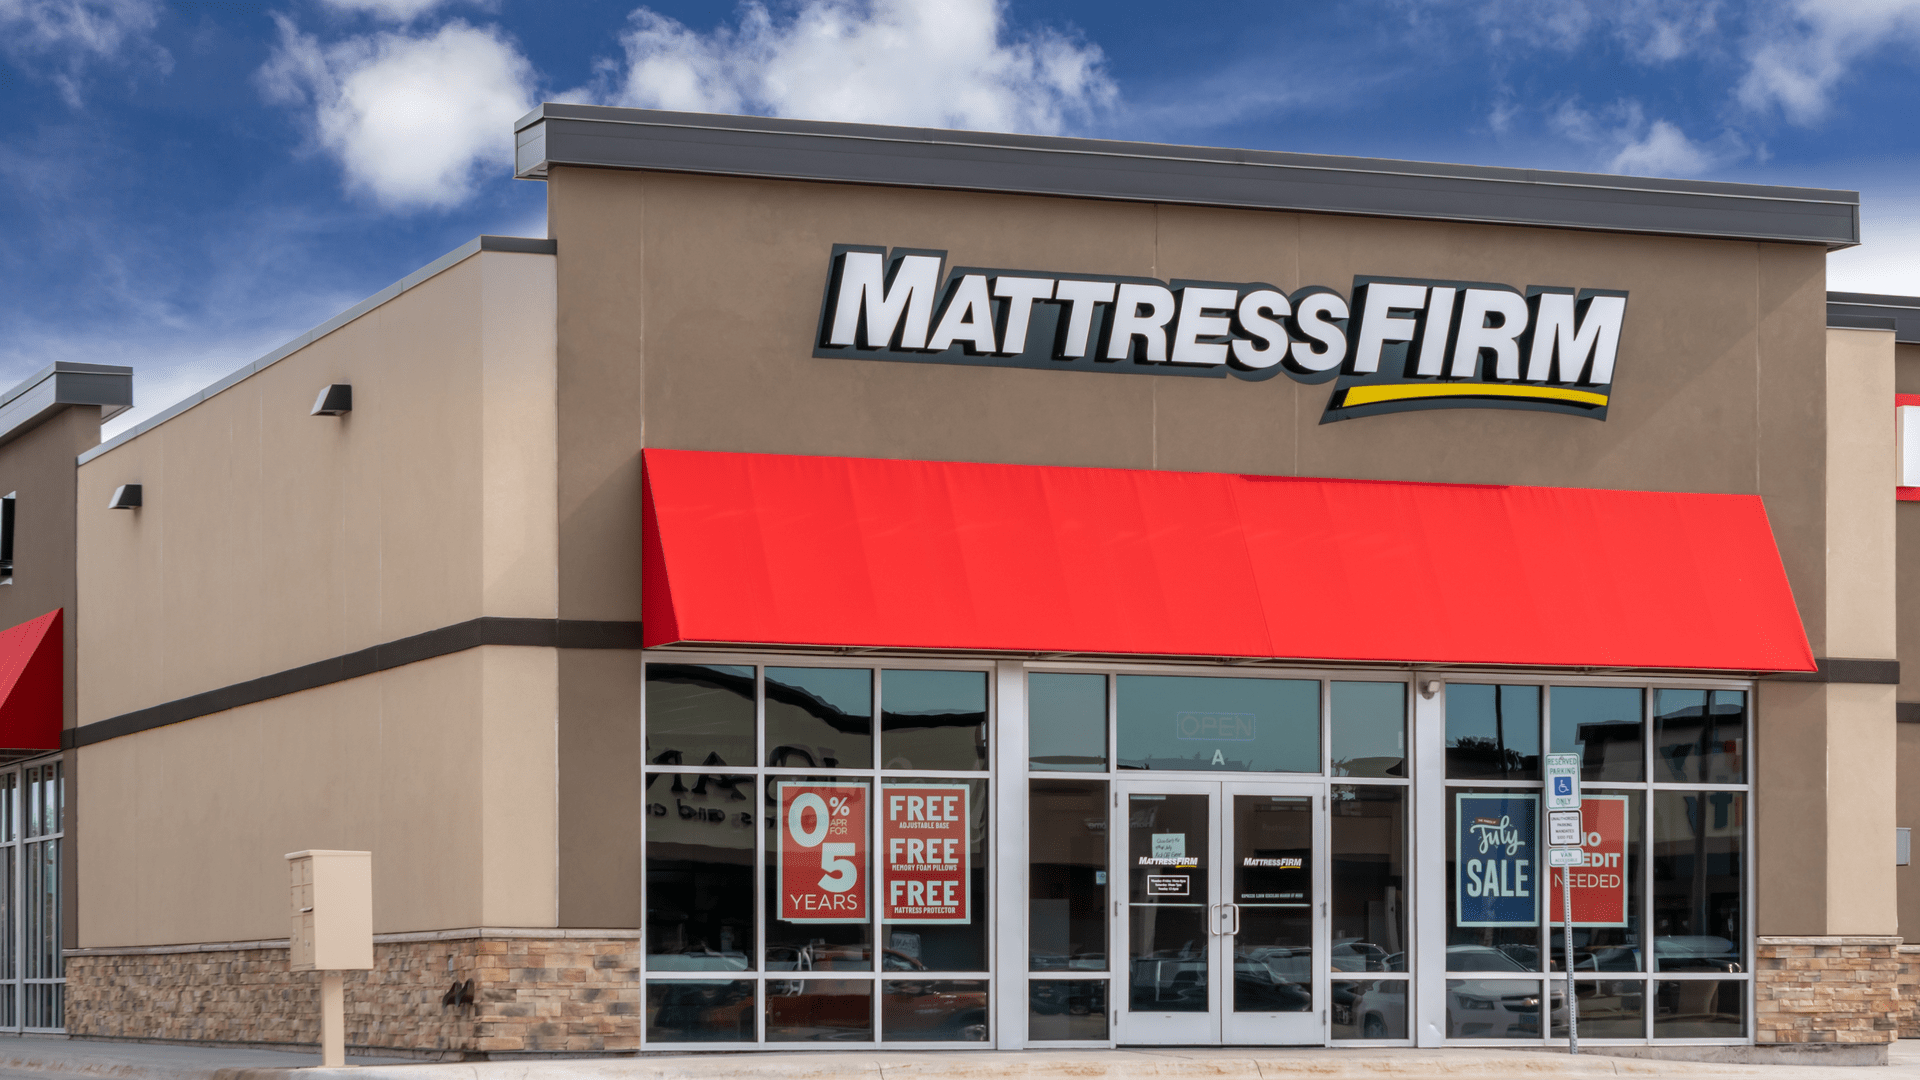 mattress firms attend only holding mattresses buddy